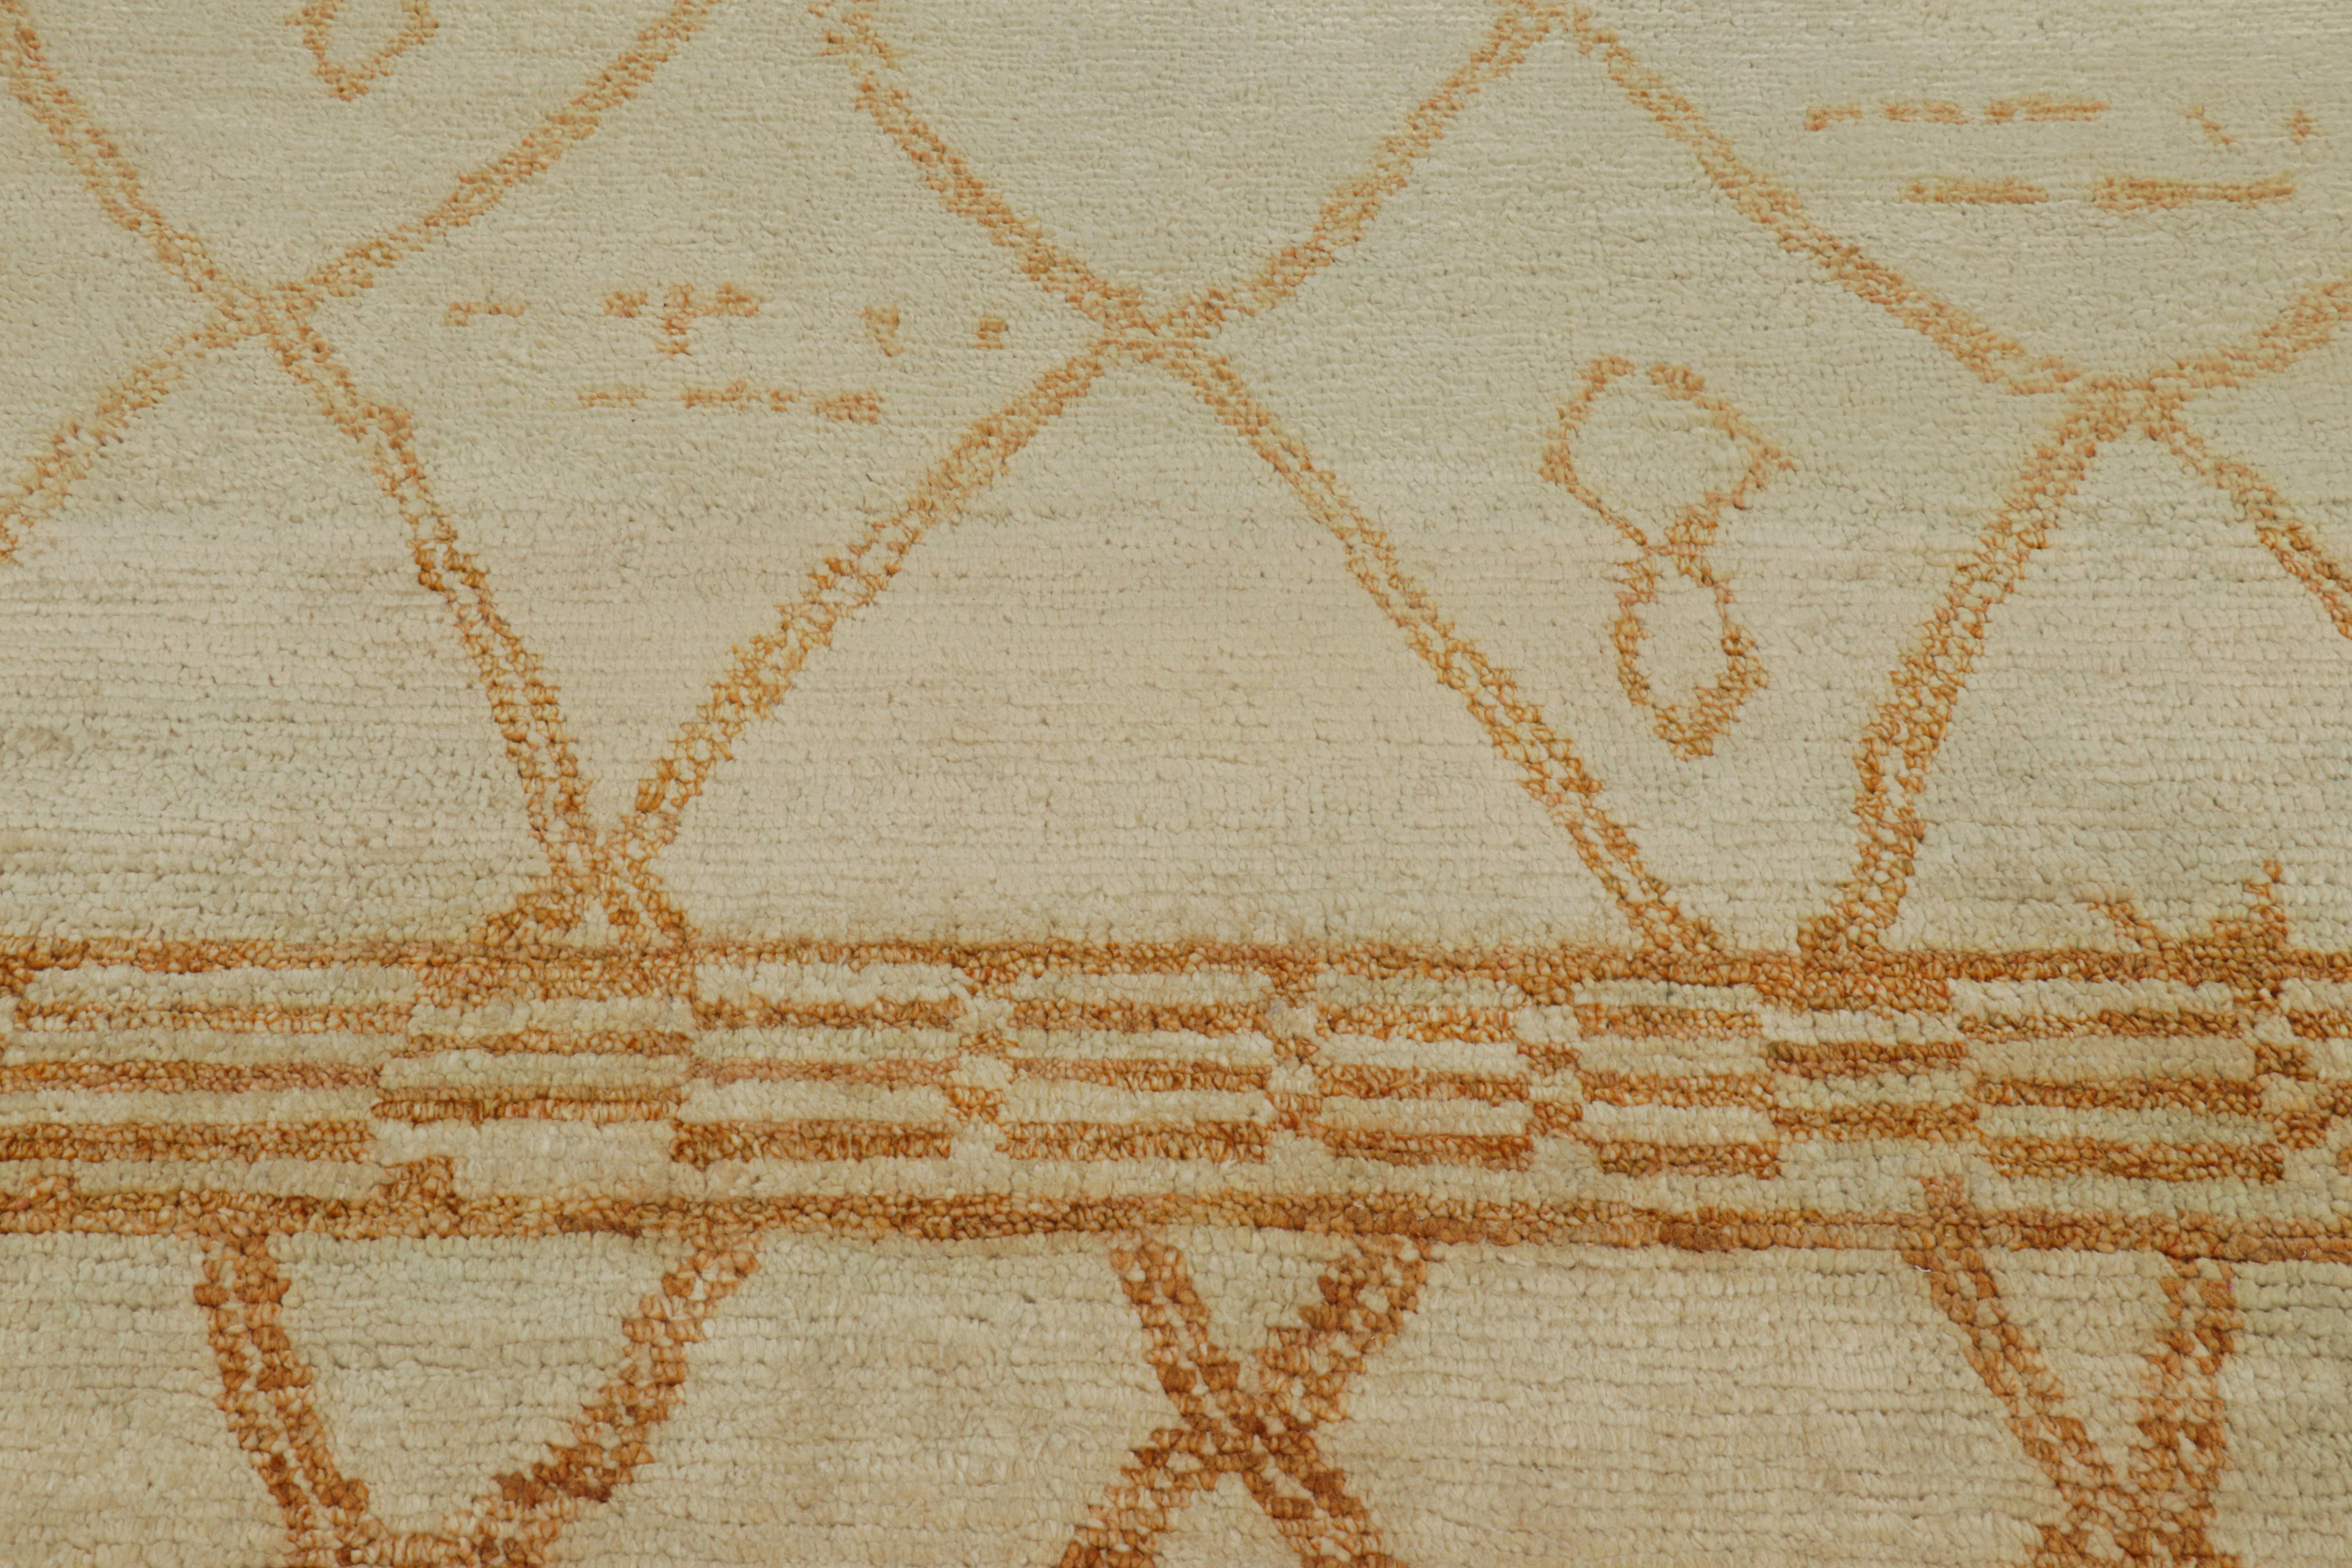 Dieser moderne marokkanische Teppich im Format 6x9 ist aus Wolle handgeknüpft und zeichnet sich durch eine gerippte Textur und geometrische Muster aus, die von den primitiven Webtraditionen der Berber inspiriert sind.

Über das Design: 

Ein Feld